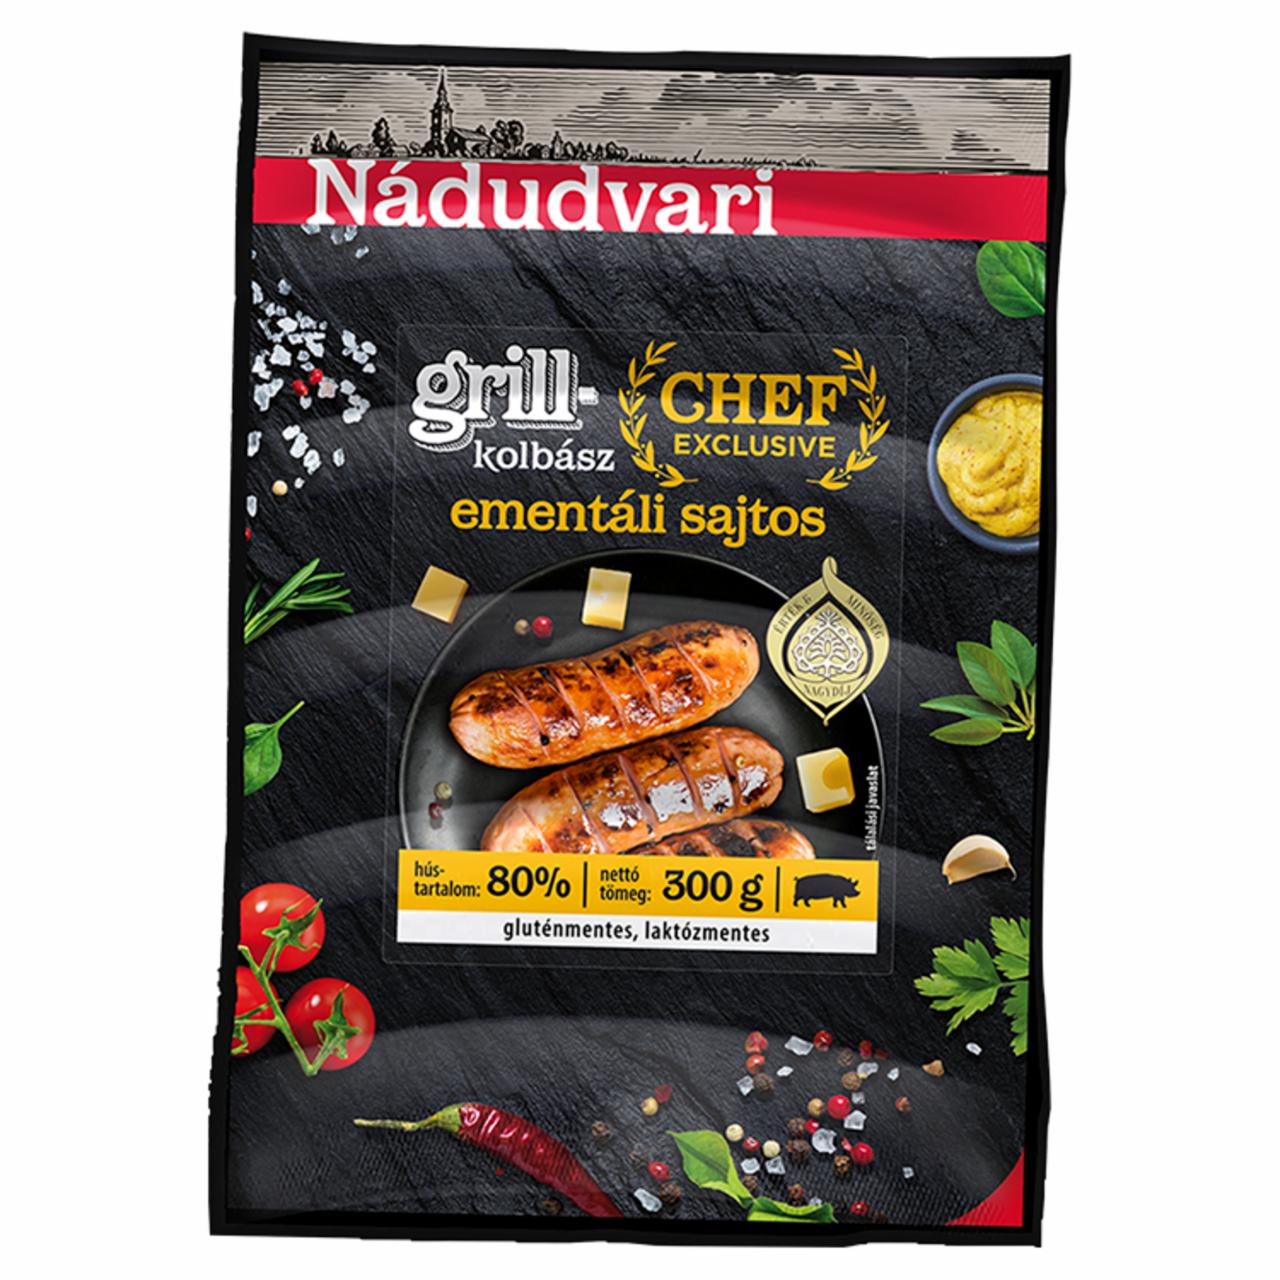 Képek - Nádudvari Chef Exclusive ementáli sajtos sertés grillkolbász 300 g